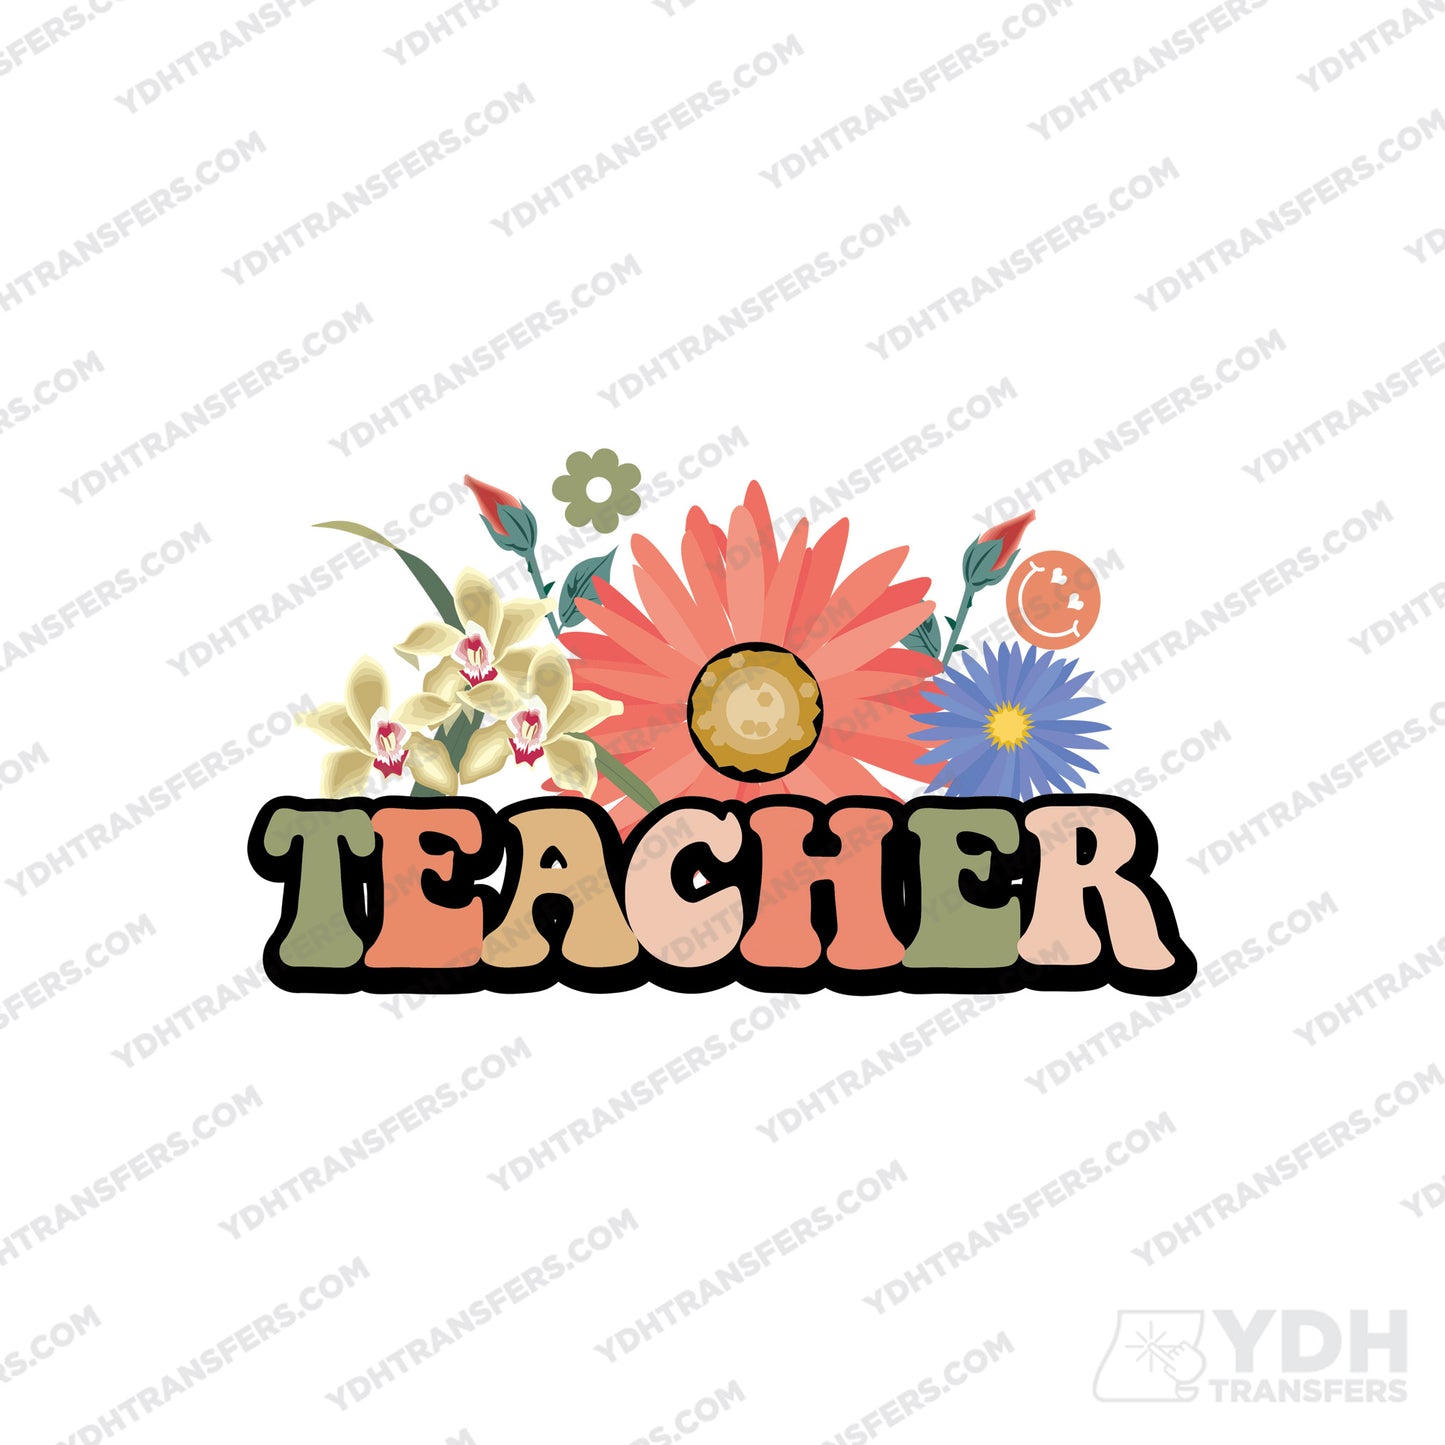 Teacher Flower Full Color Transfer